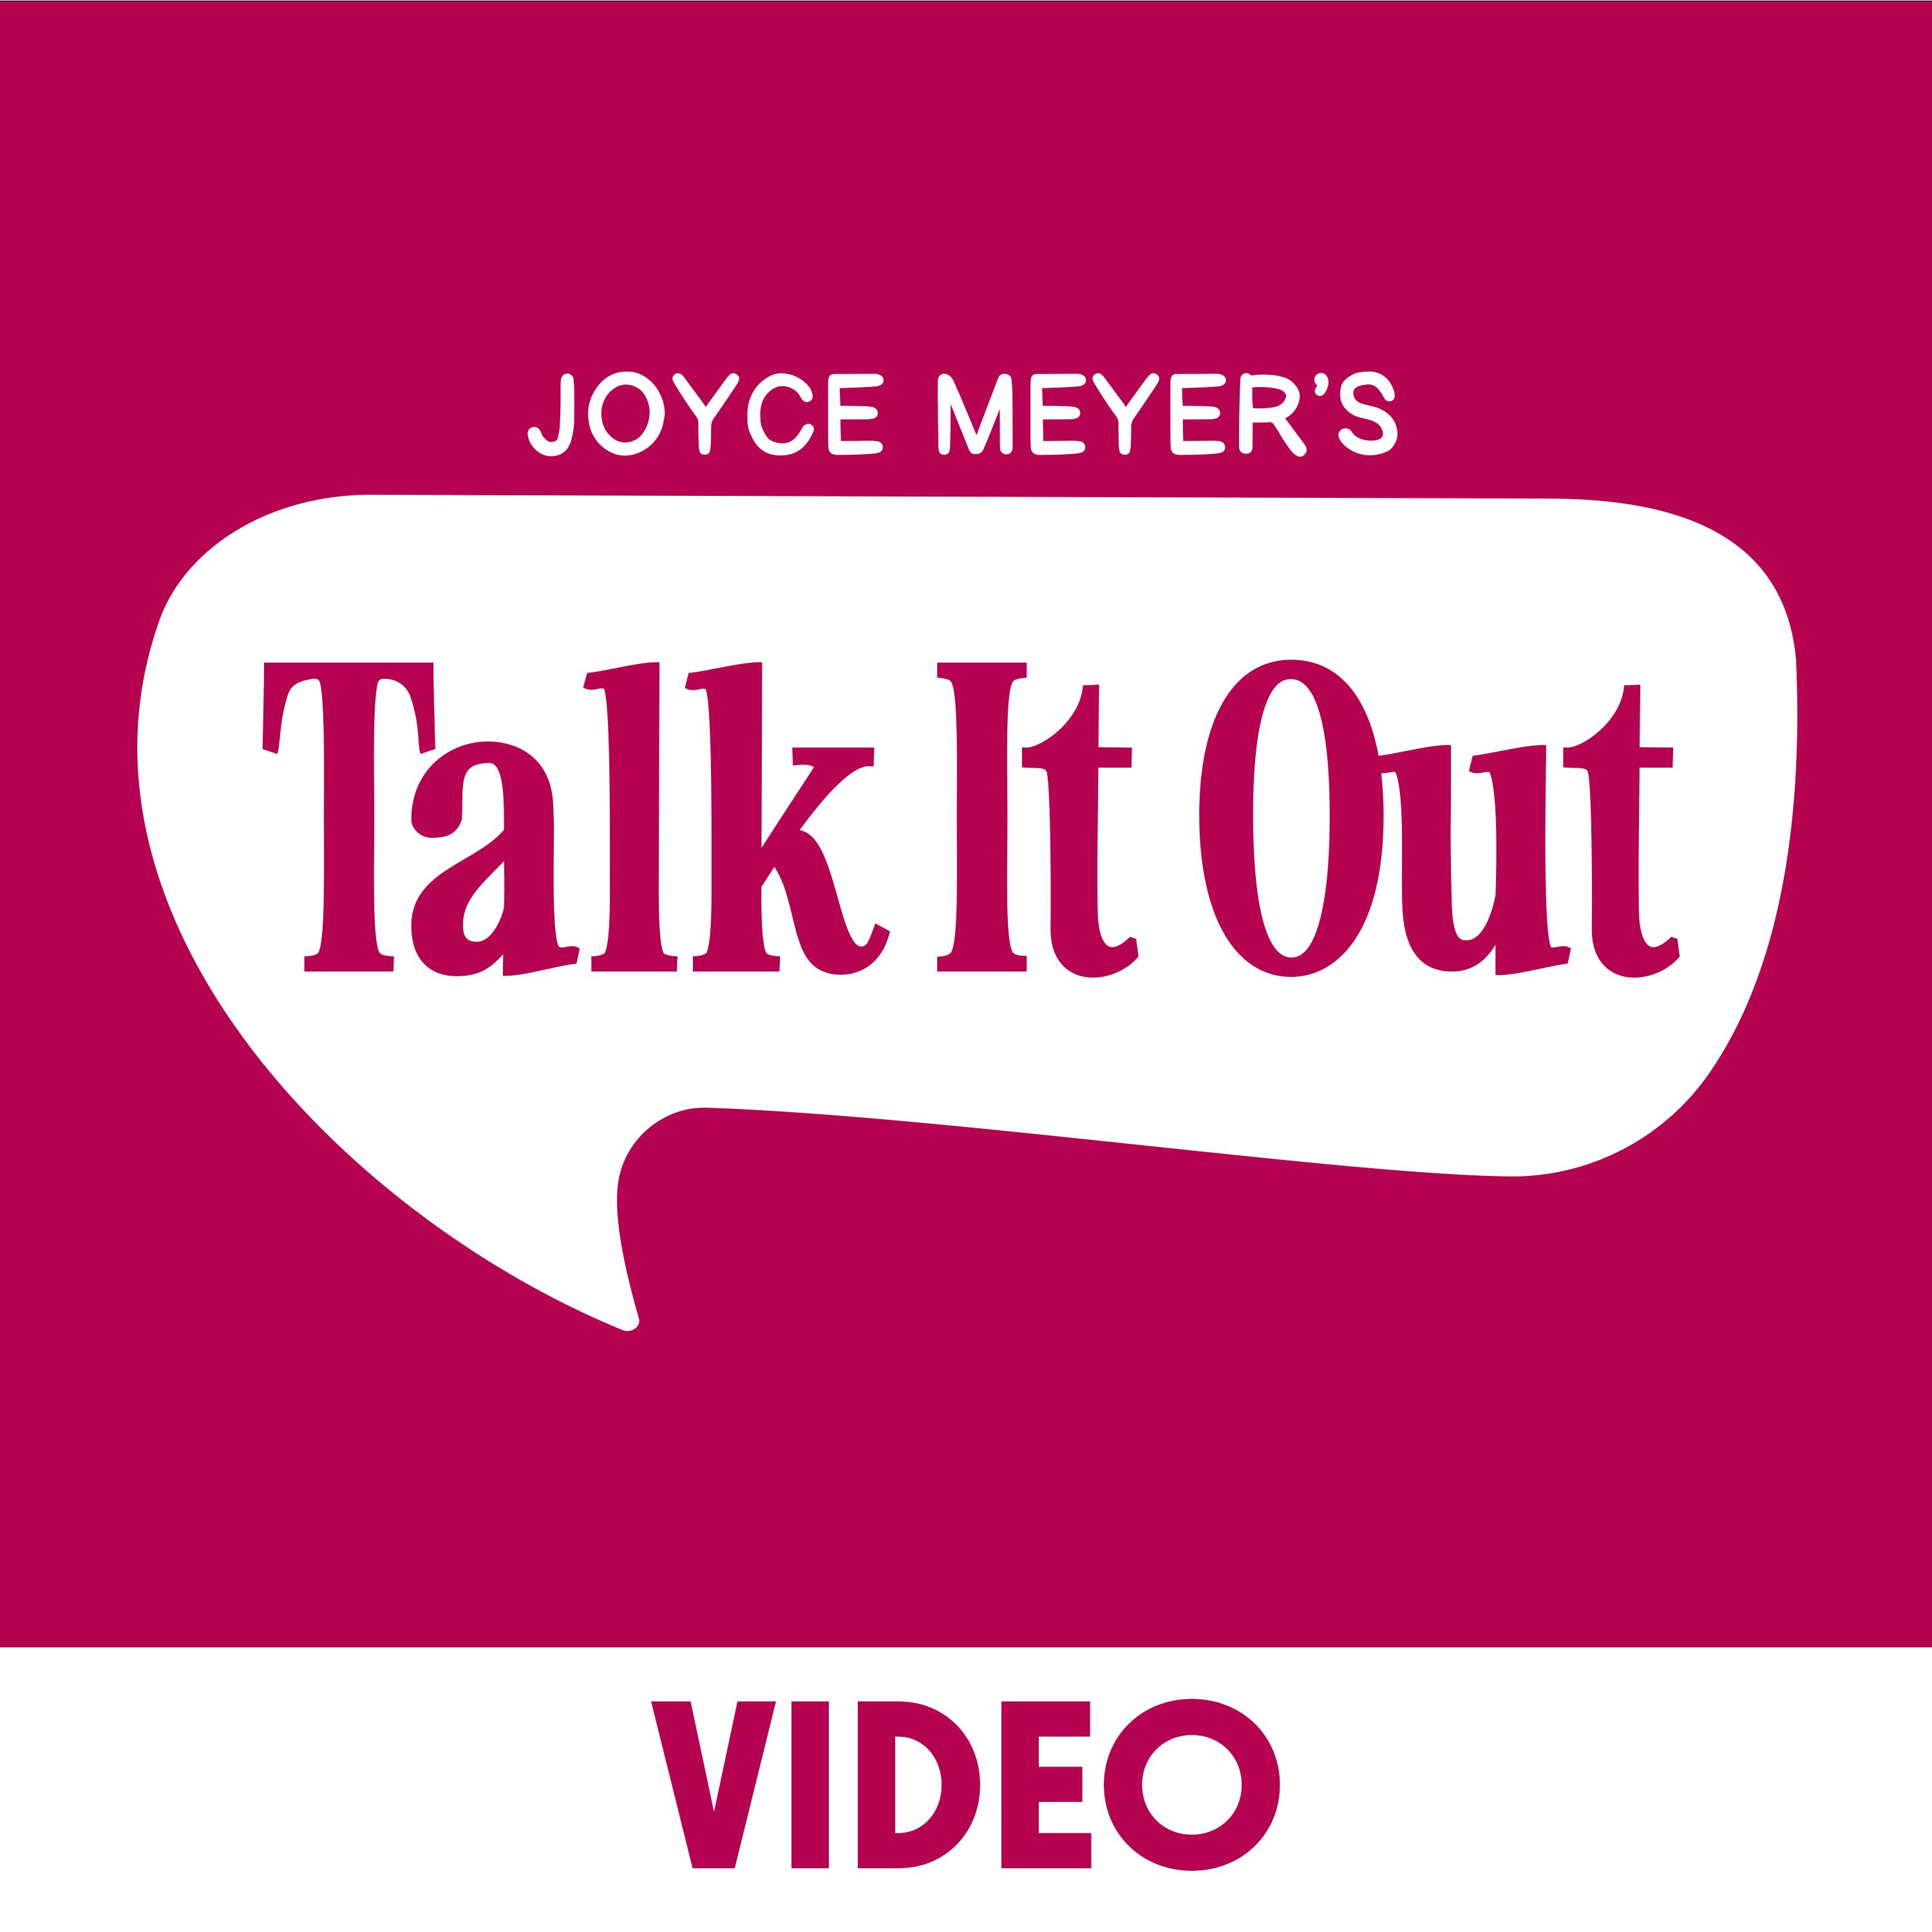 Jealous & Judgmental Attitudes - Pt 2, Joyce Meyer